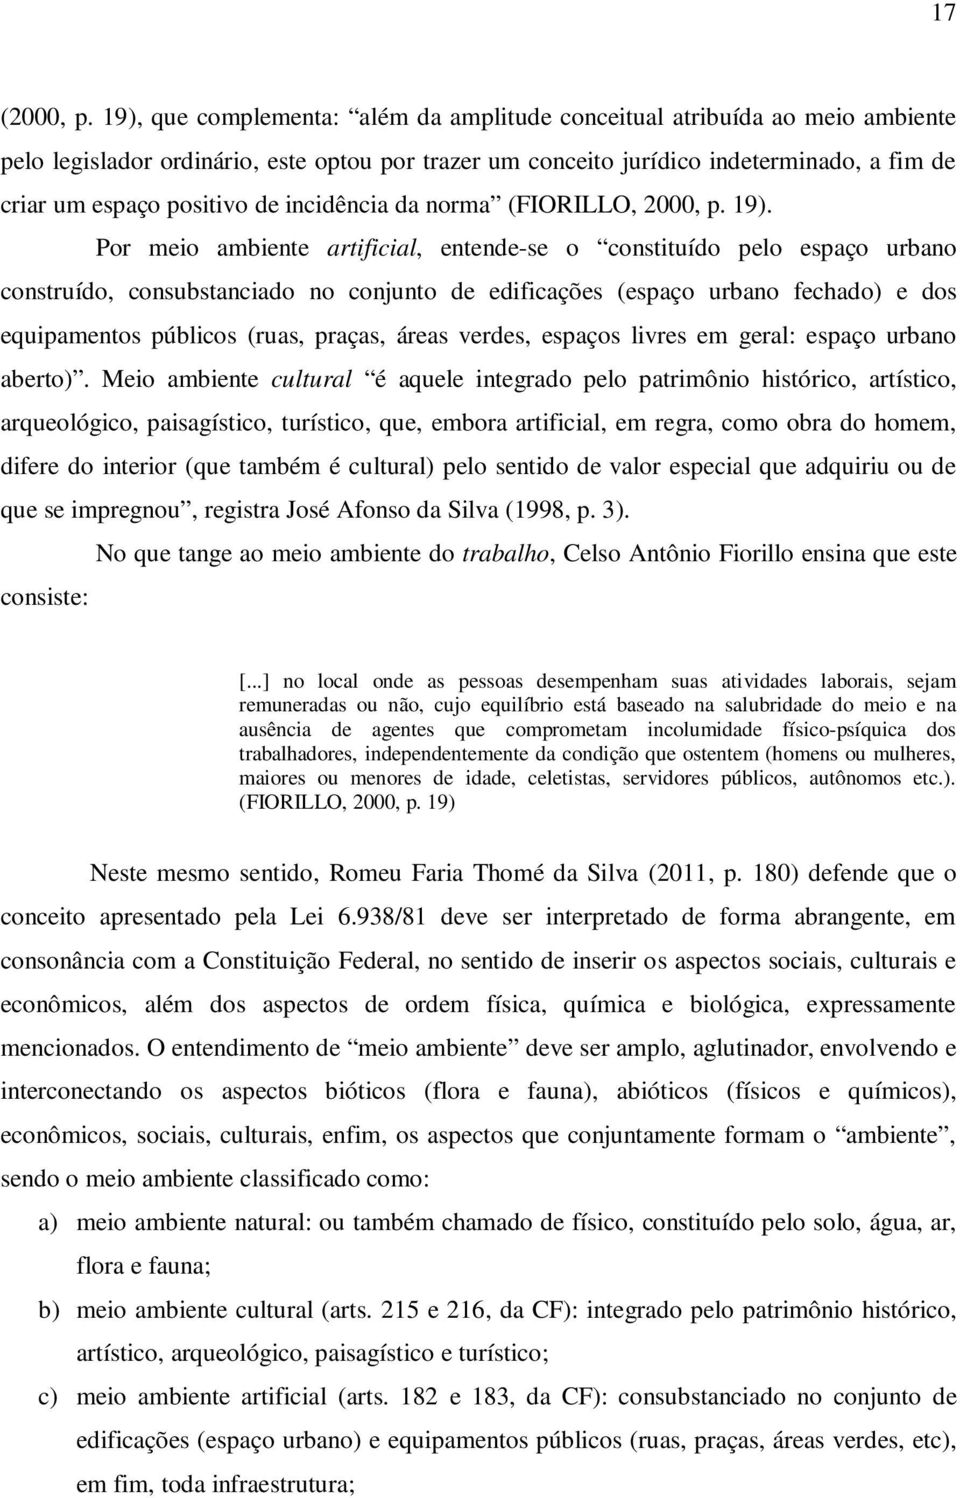 incidência da norma (FIORILLO, 2000, p. 19).